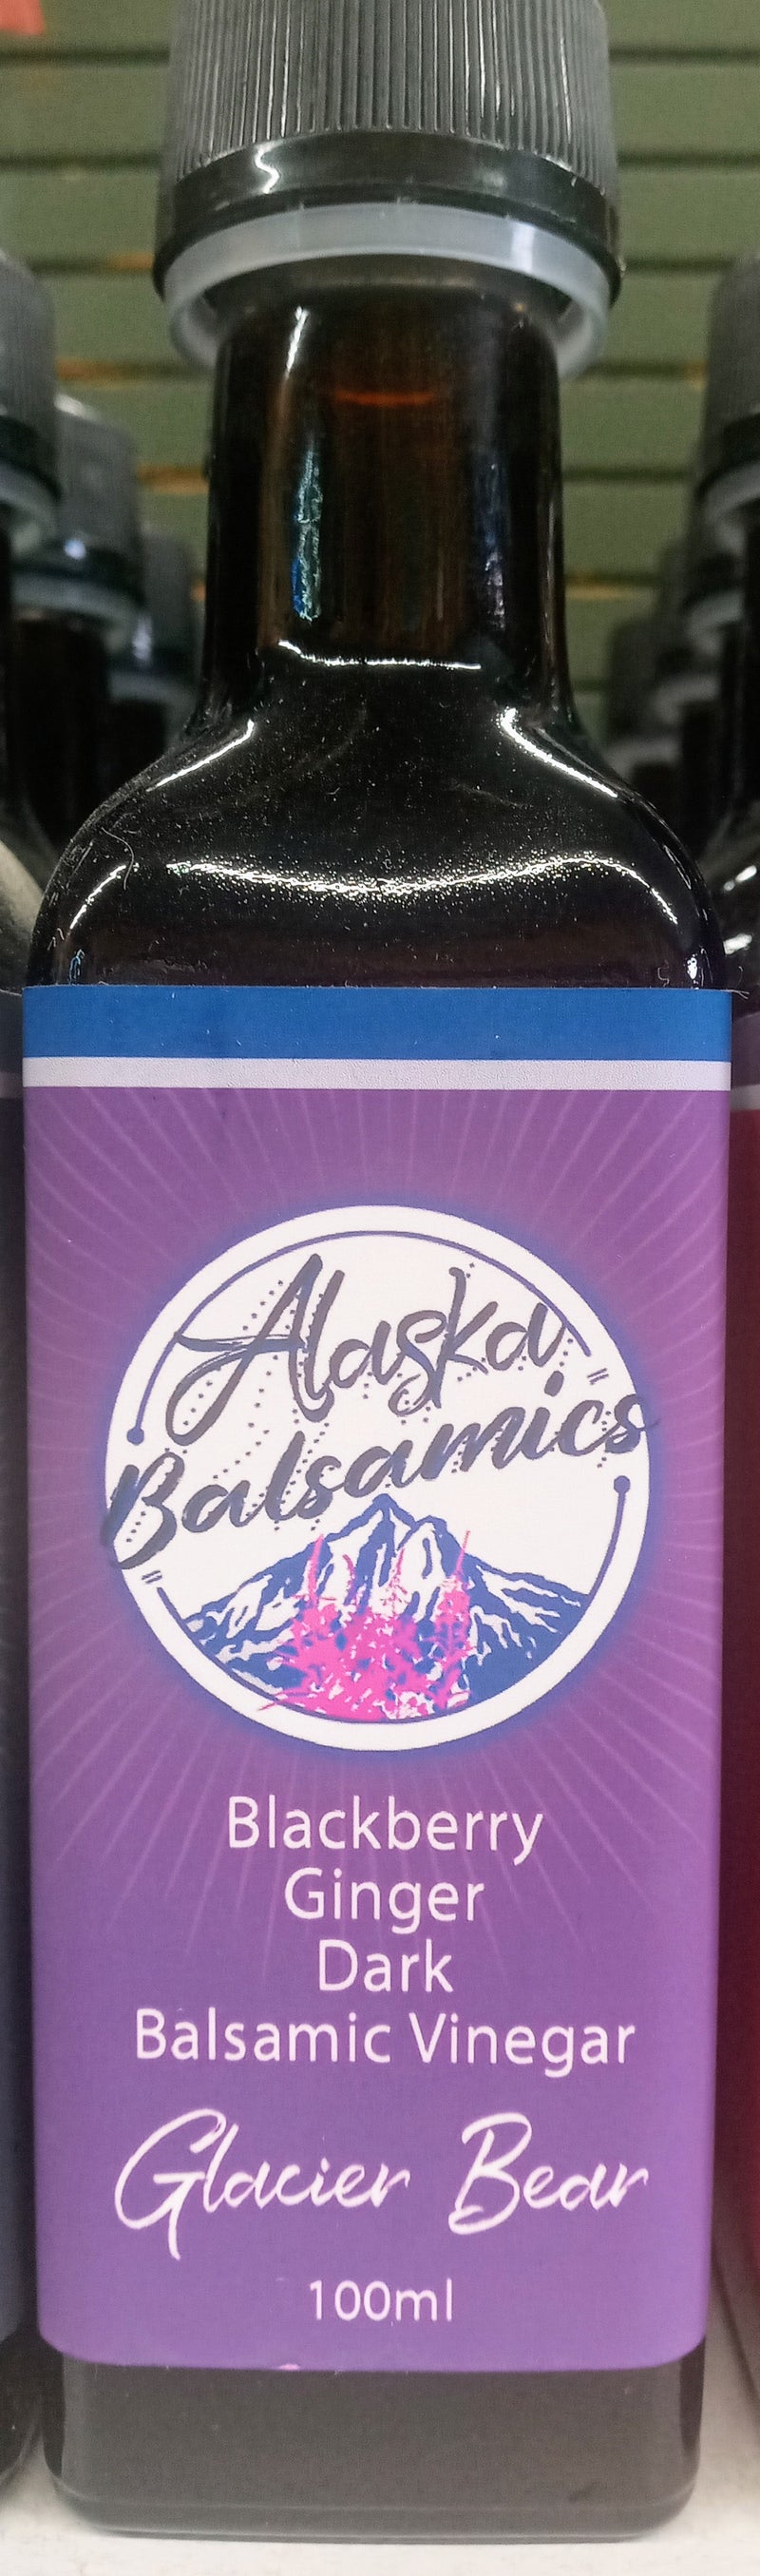 Alaska Balsamics Vinegars